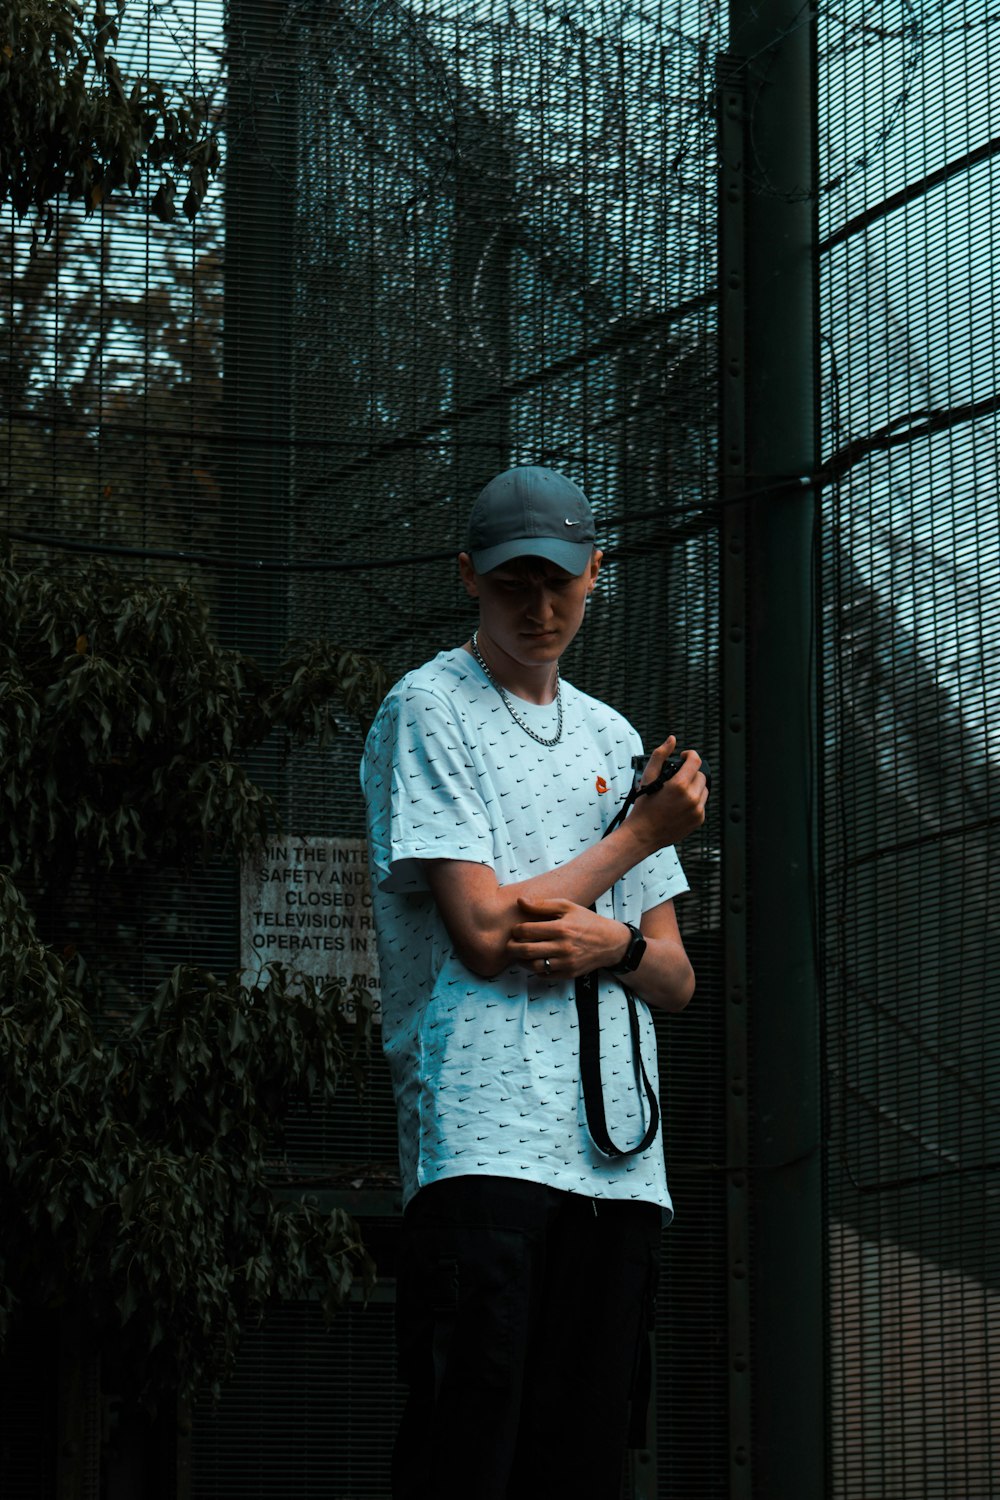 um homem segurando uma raquete de tênis em cima de uma quadra de tênis